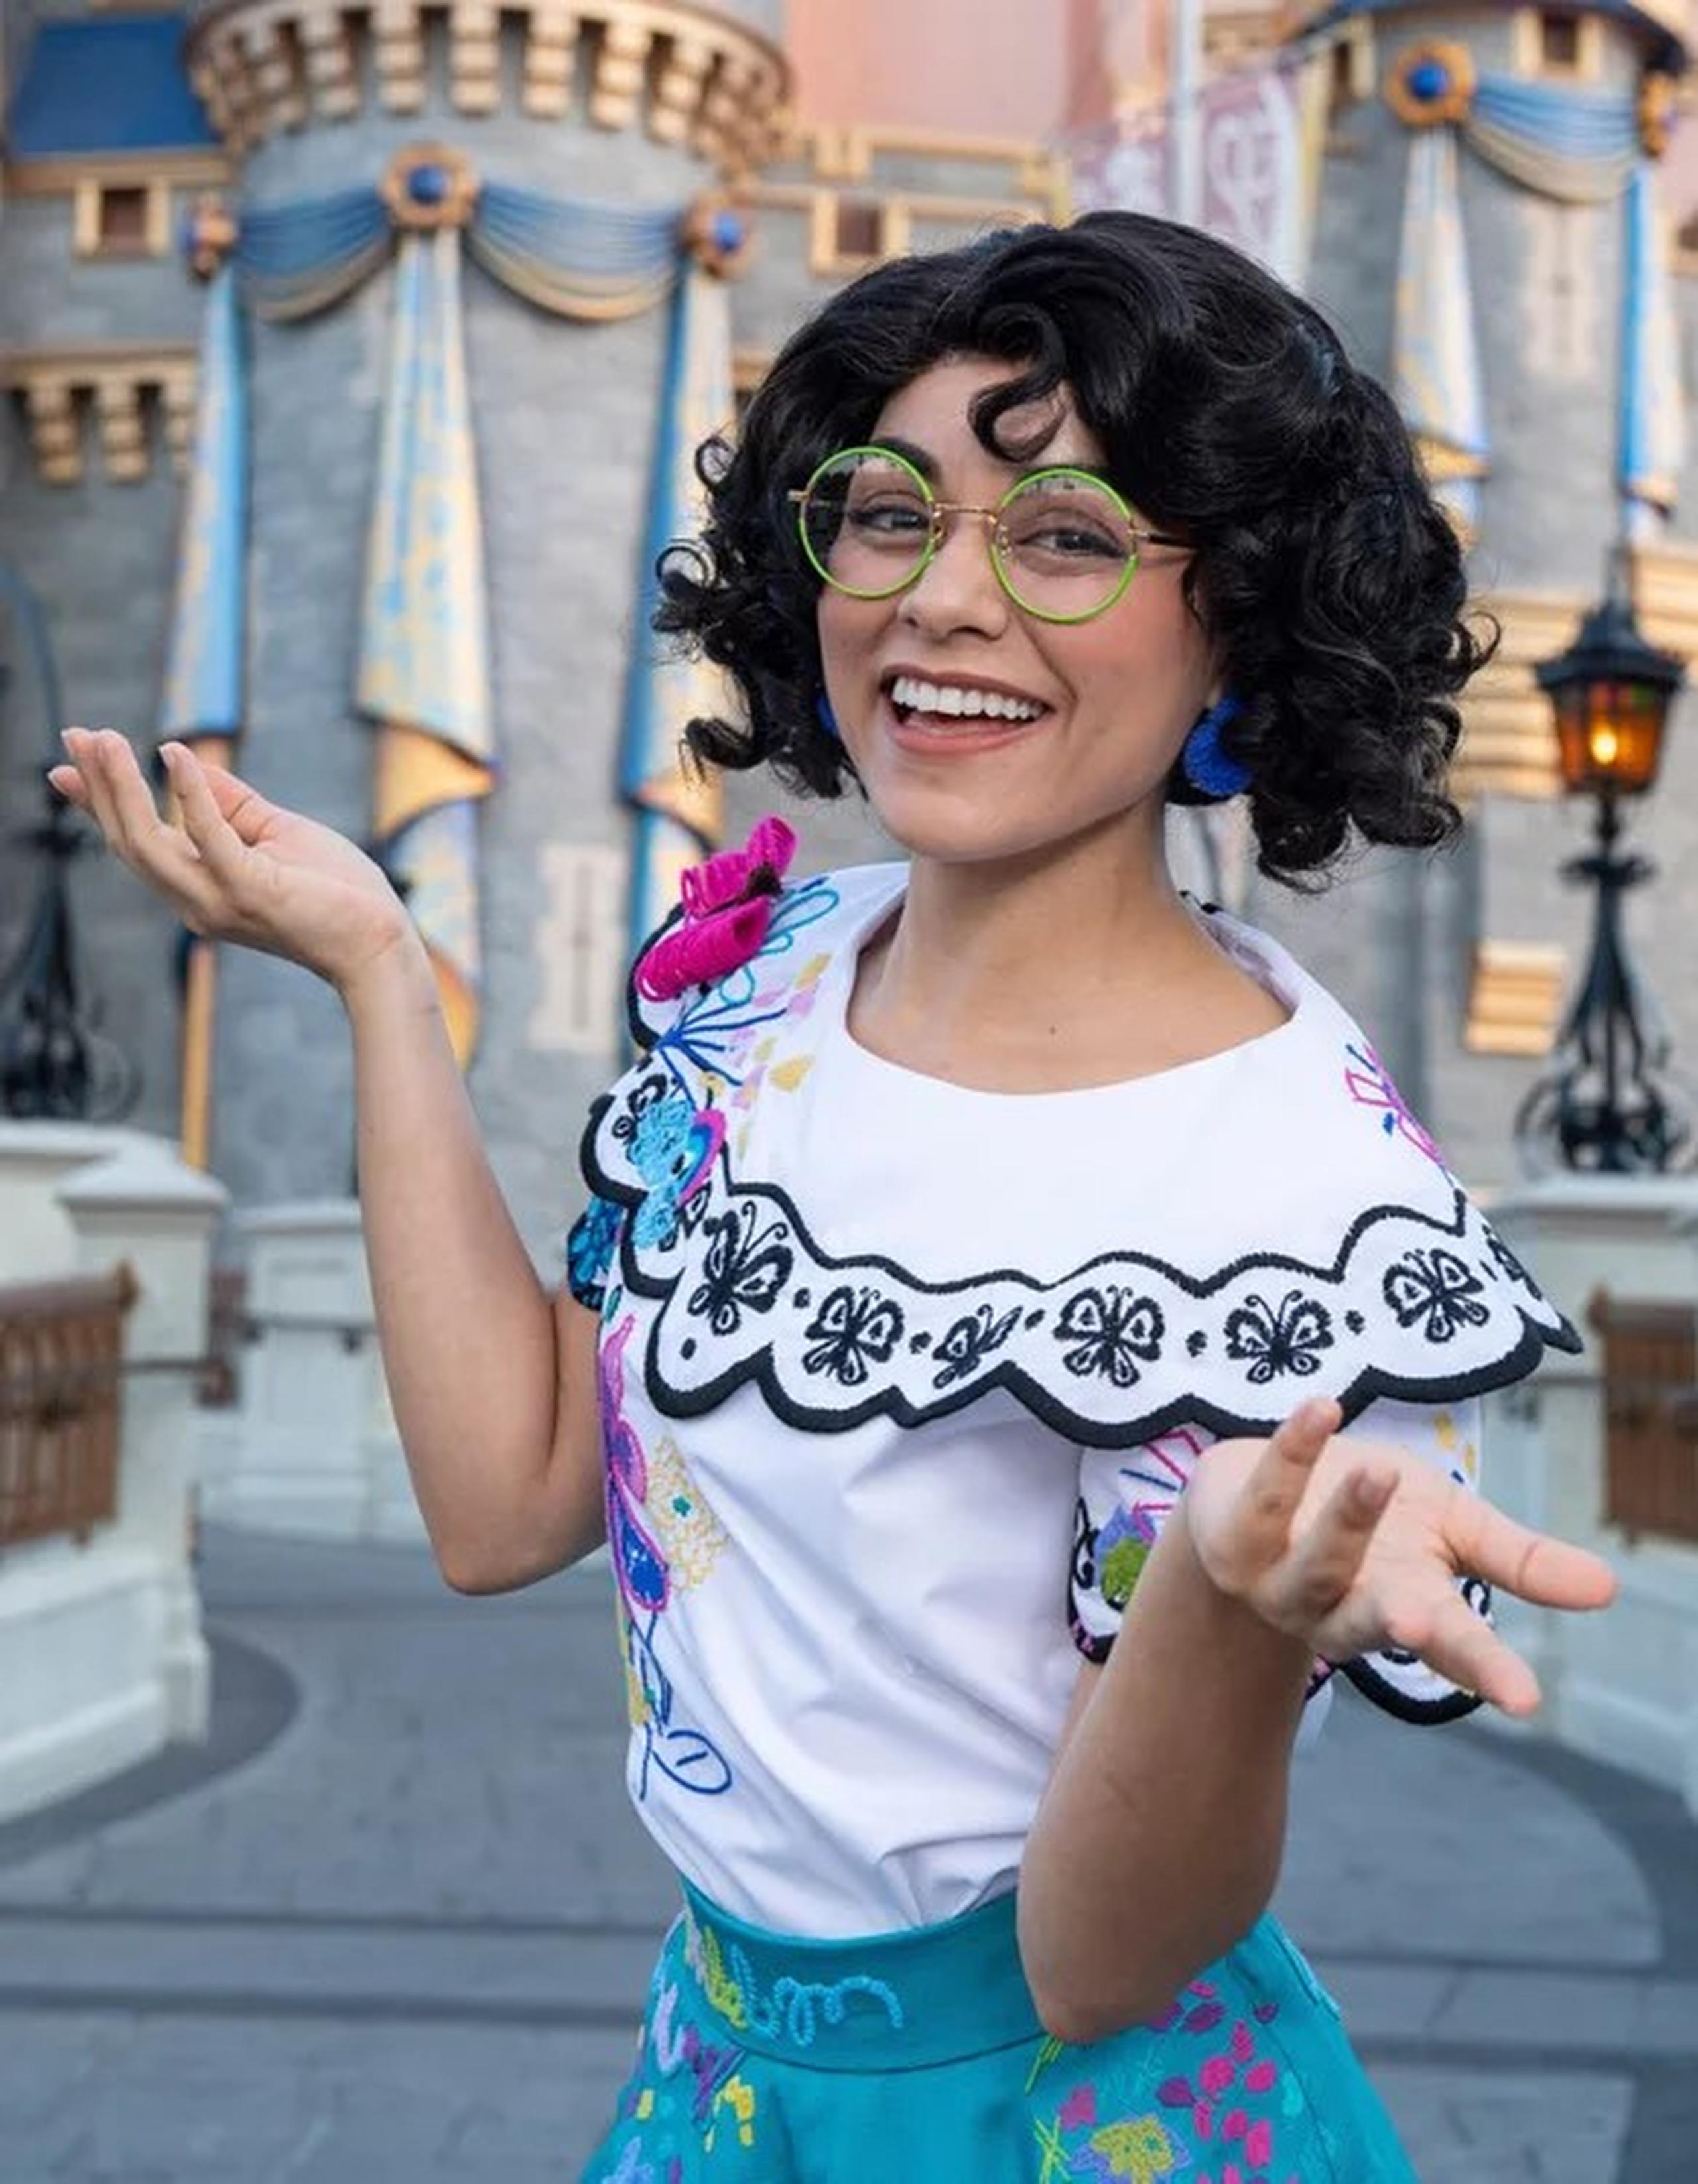 Mirabel y su tío Bruno, de "Encanto", el filme de Walt Disney Animation Studios, son los nuevos personajes que llegan al parque temático Magic Kingdom.